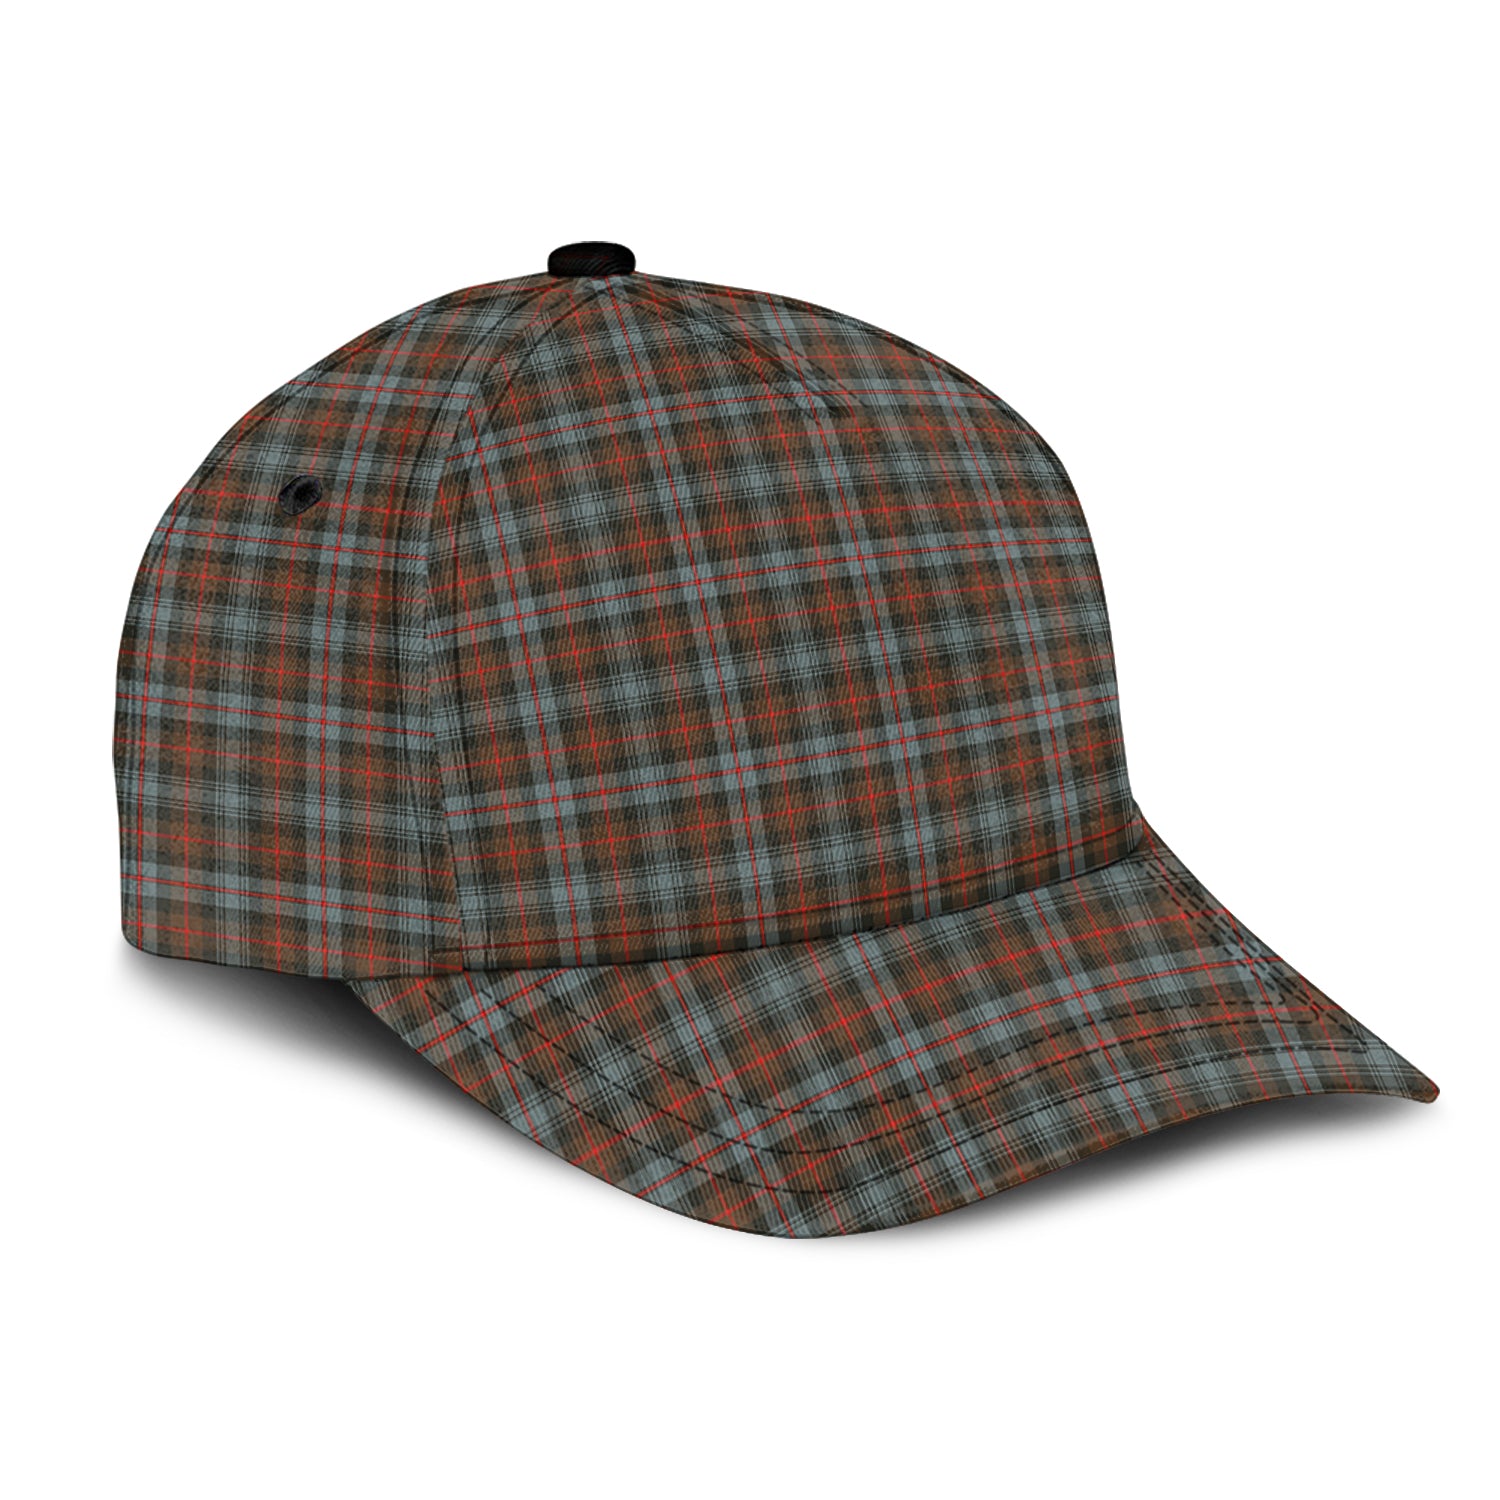 murray-of-atholl-weathered-tartan-classic-cap